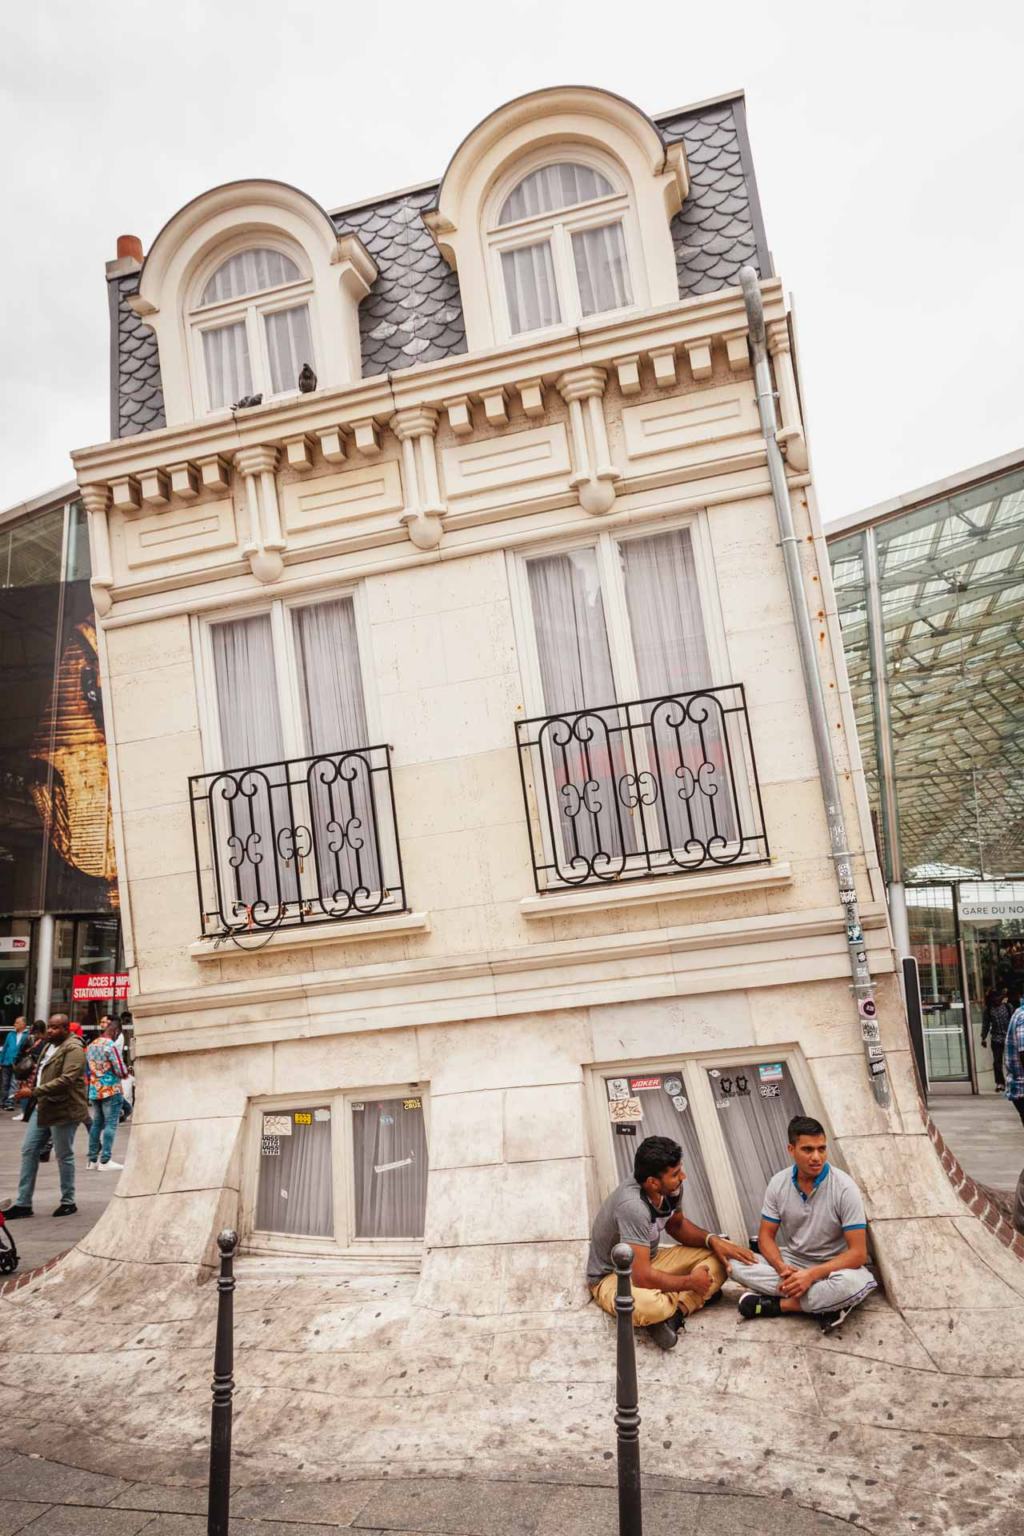 Maison Fond, Gare du Nord, Melting House, Paris